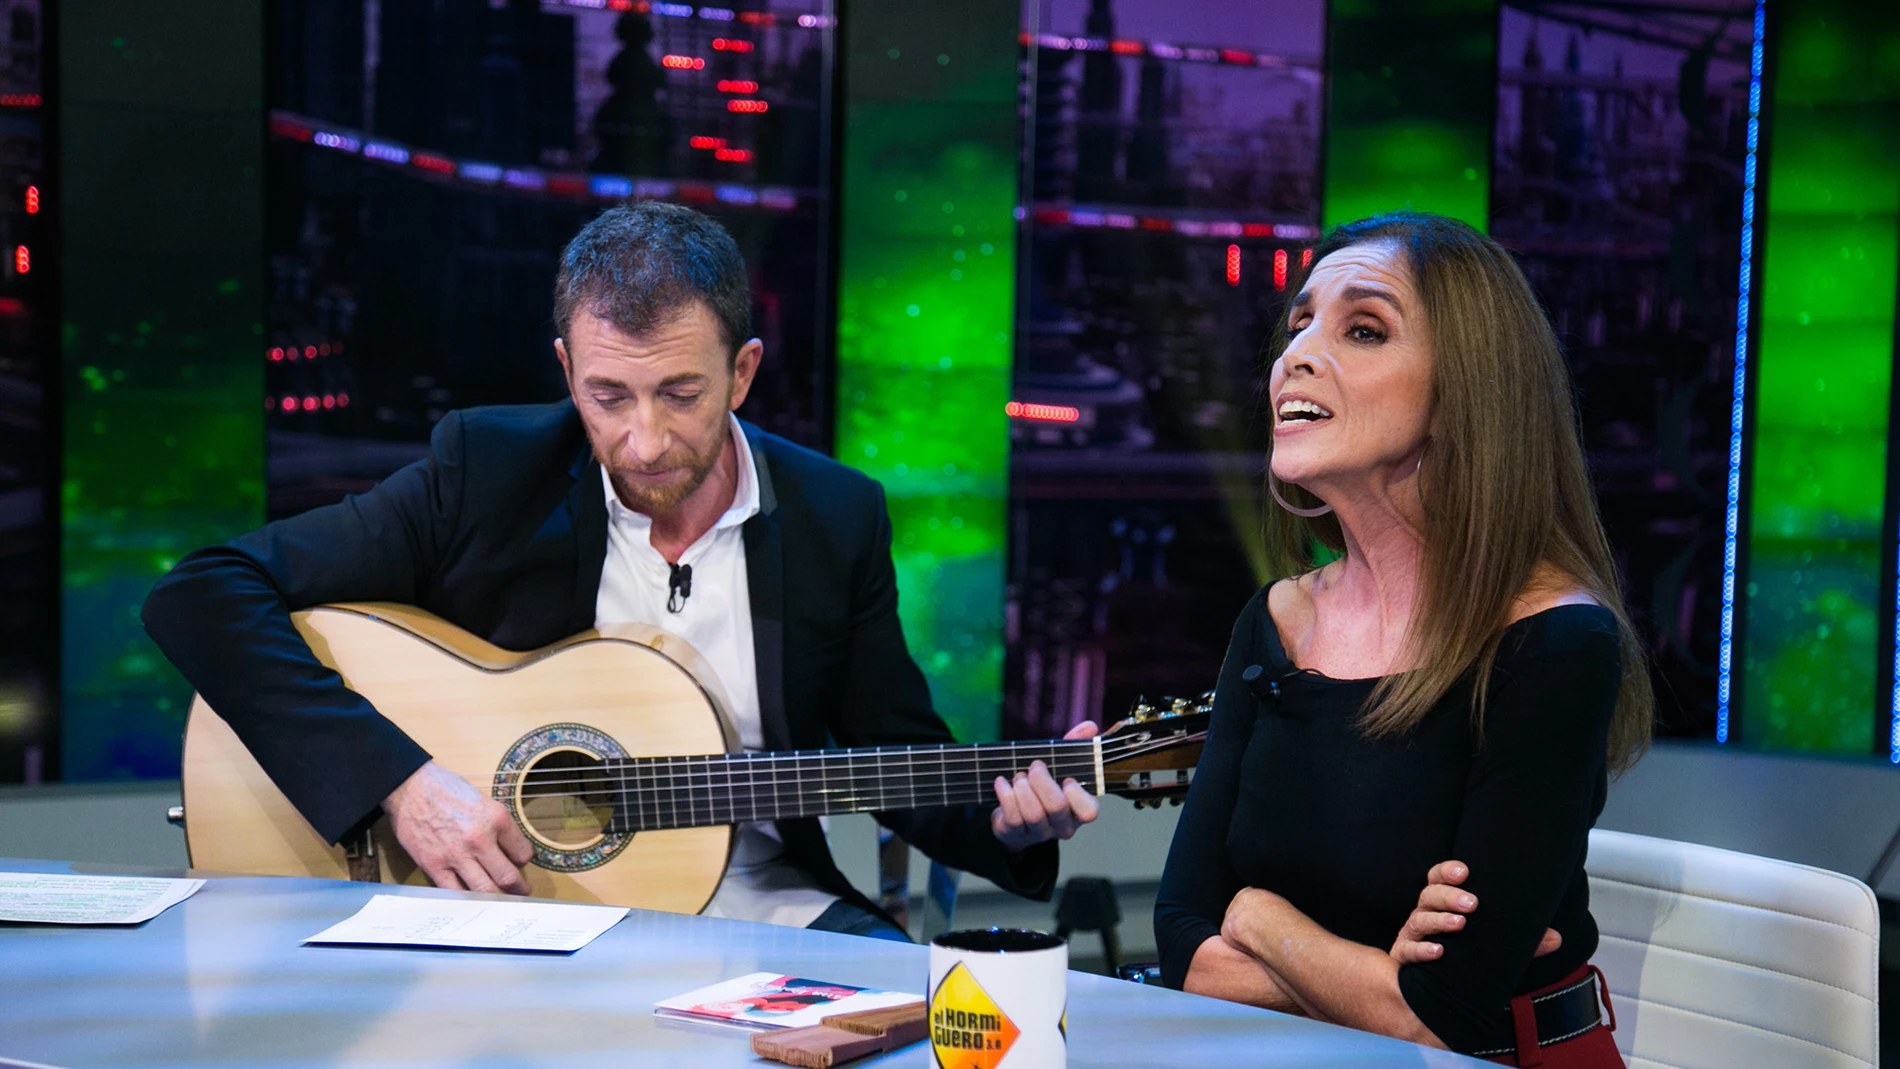 Ana Belén deleita al público de 'El Hormiguero 3.0' cantando 'Let it be' con Pablo Motos a la guitarra